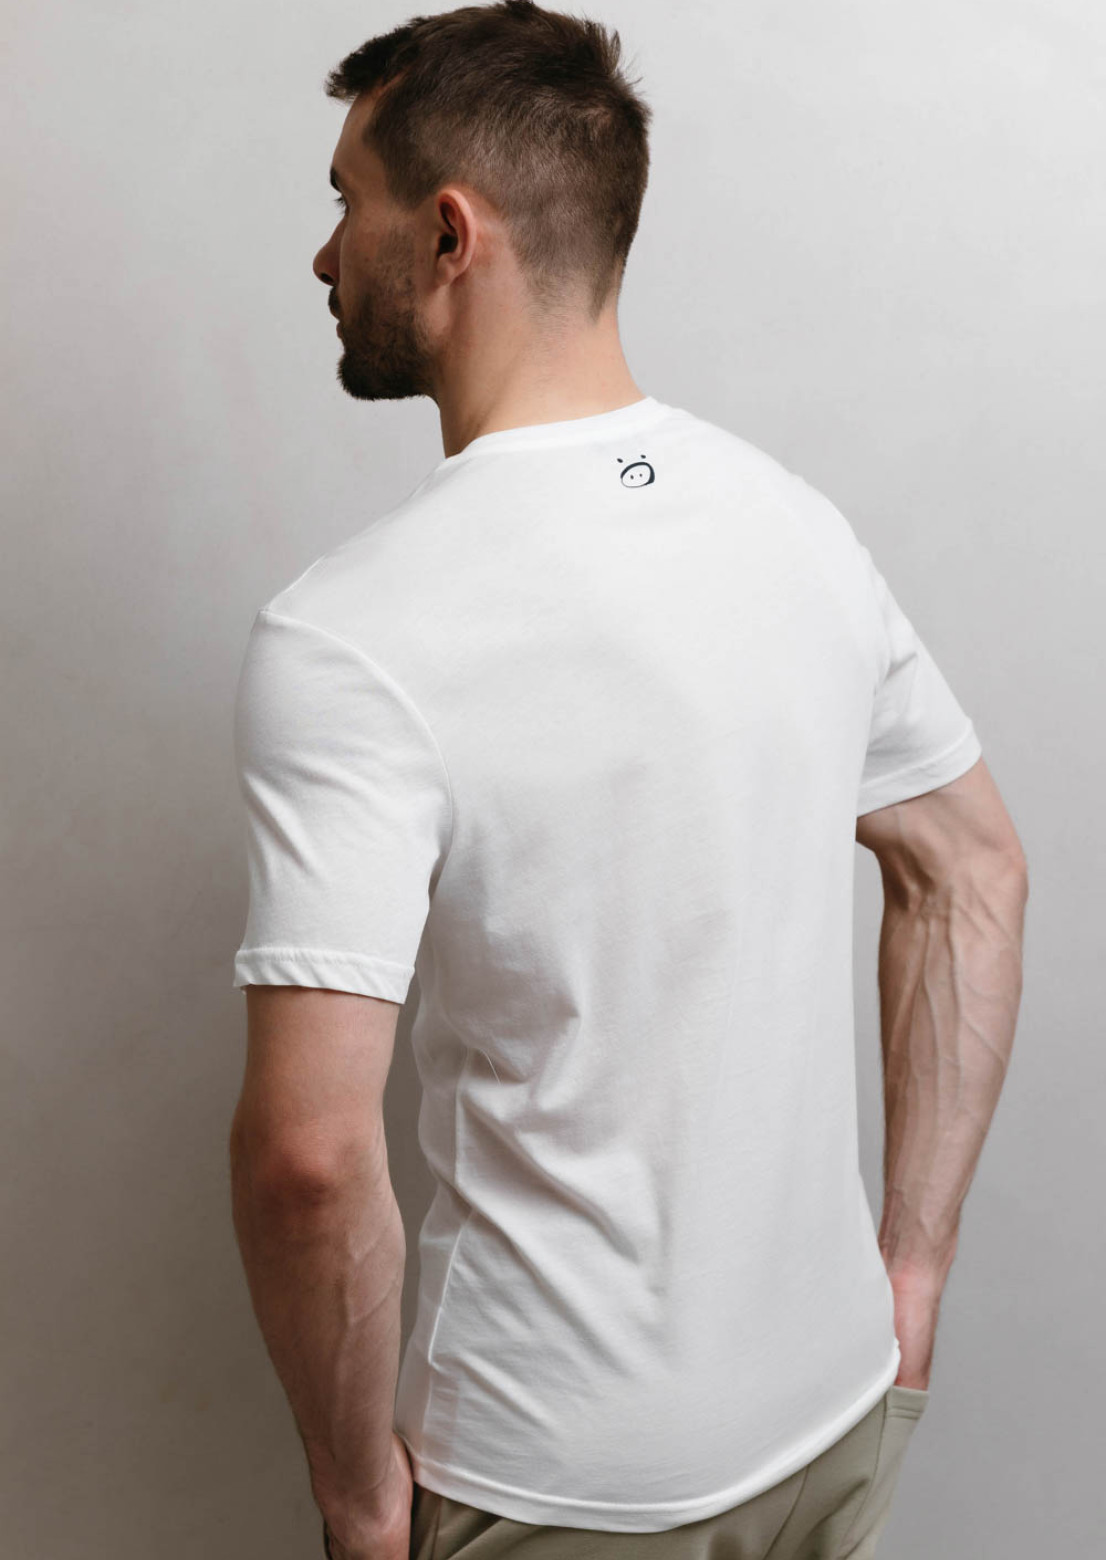 Men's white jersey basic T-shirt